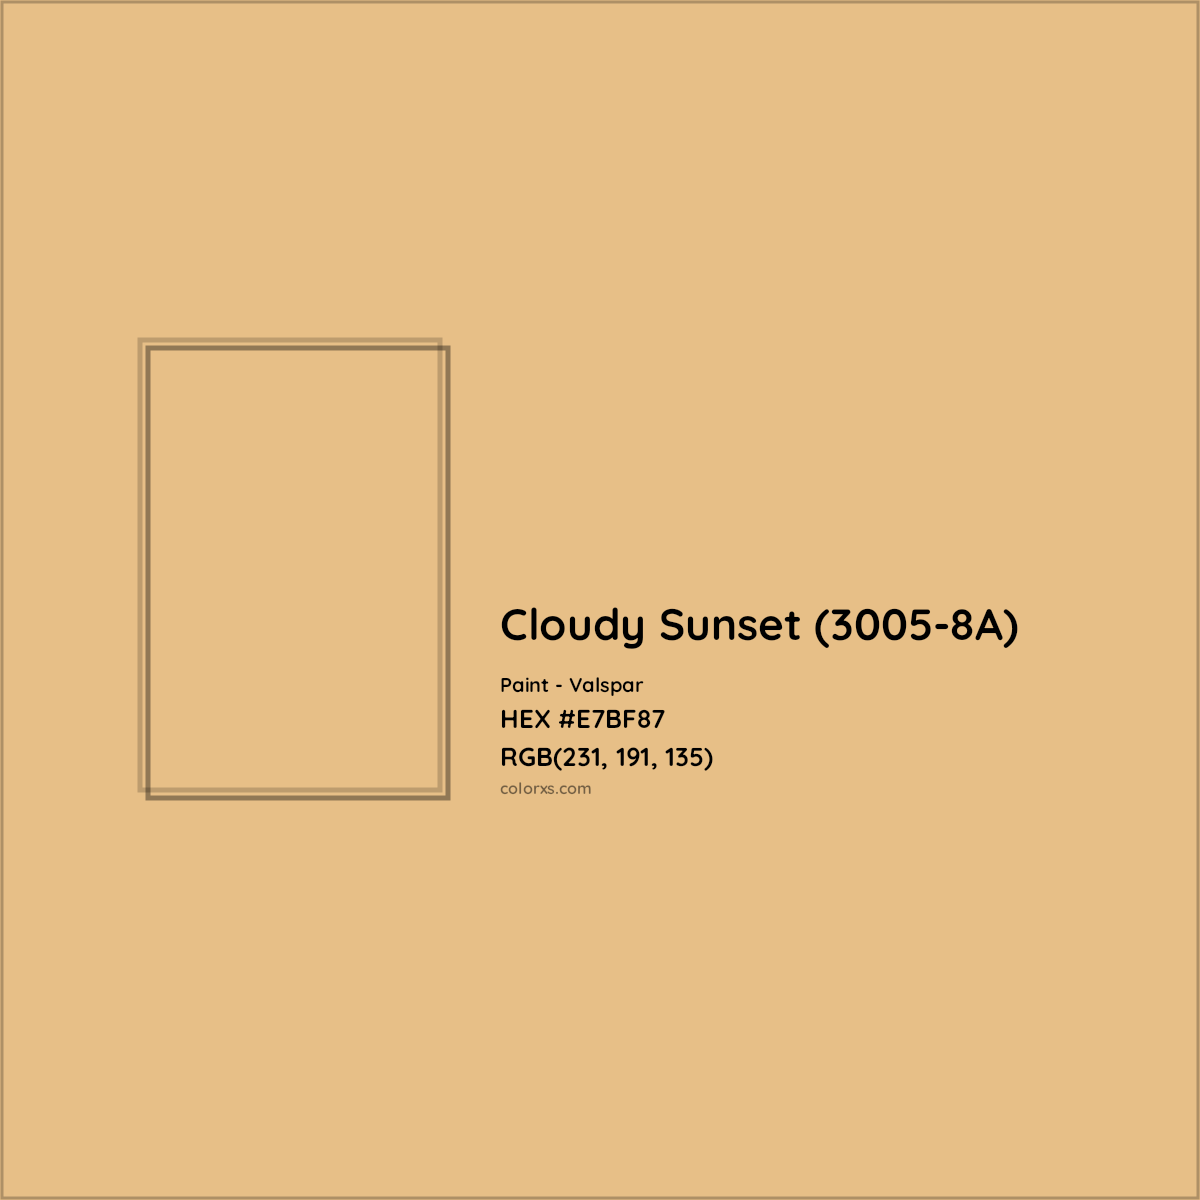 HEX #E7BF87 Cloudy Sunset (3005-8A) Paint Valspar - Color Code